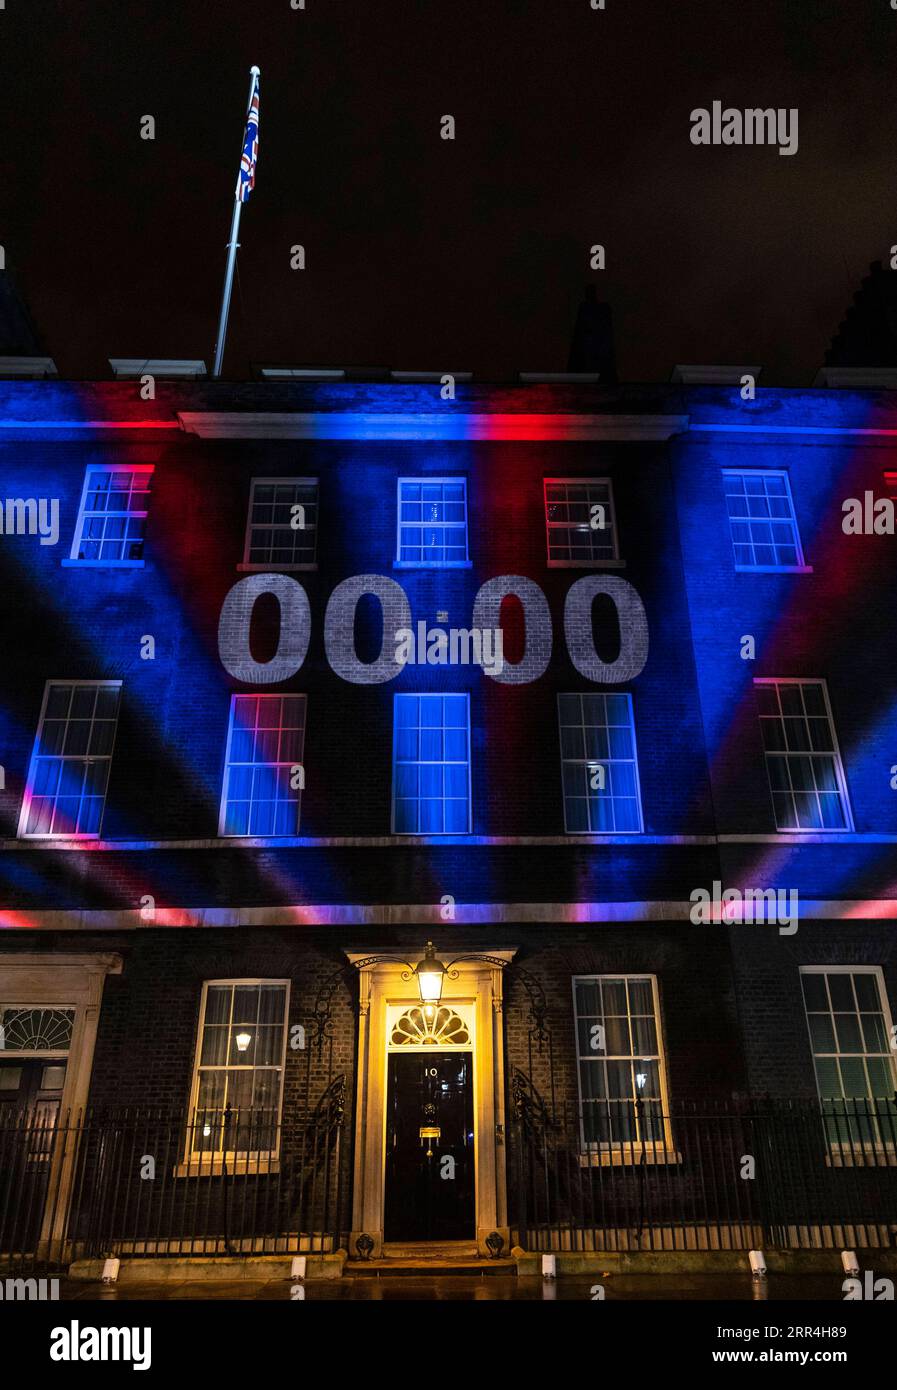 201205 -- LONDON, 5. Dez. 2020 -- Aktenfoto vom 31. Januar 2020 zeigt eine Countdown-Uhr, die auf die Wand der 10 Downing Street in London projiziert wird. Nach einer Woche intensiver Handelsverhandlungen in London einigten sich die Verhandlungsführer aus Großbritannien und der Europäischen Union am Freitag darauf, die Gespräche aufgrund erheblicher Unterschiede zu unterbrechen. GROSSBRITANNIEN-LONDON-BREXIT-HANDELSGESPRÄCHE-PAUSE HANXYAN PUBLICATIONXNOTXINXCHN Stockfoto